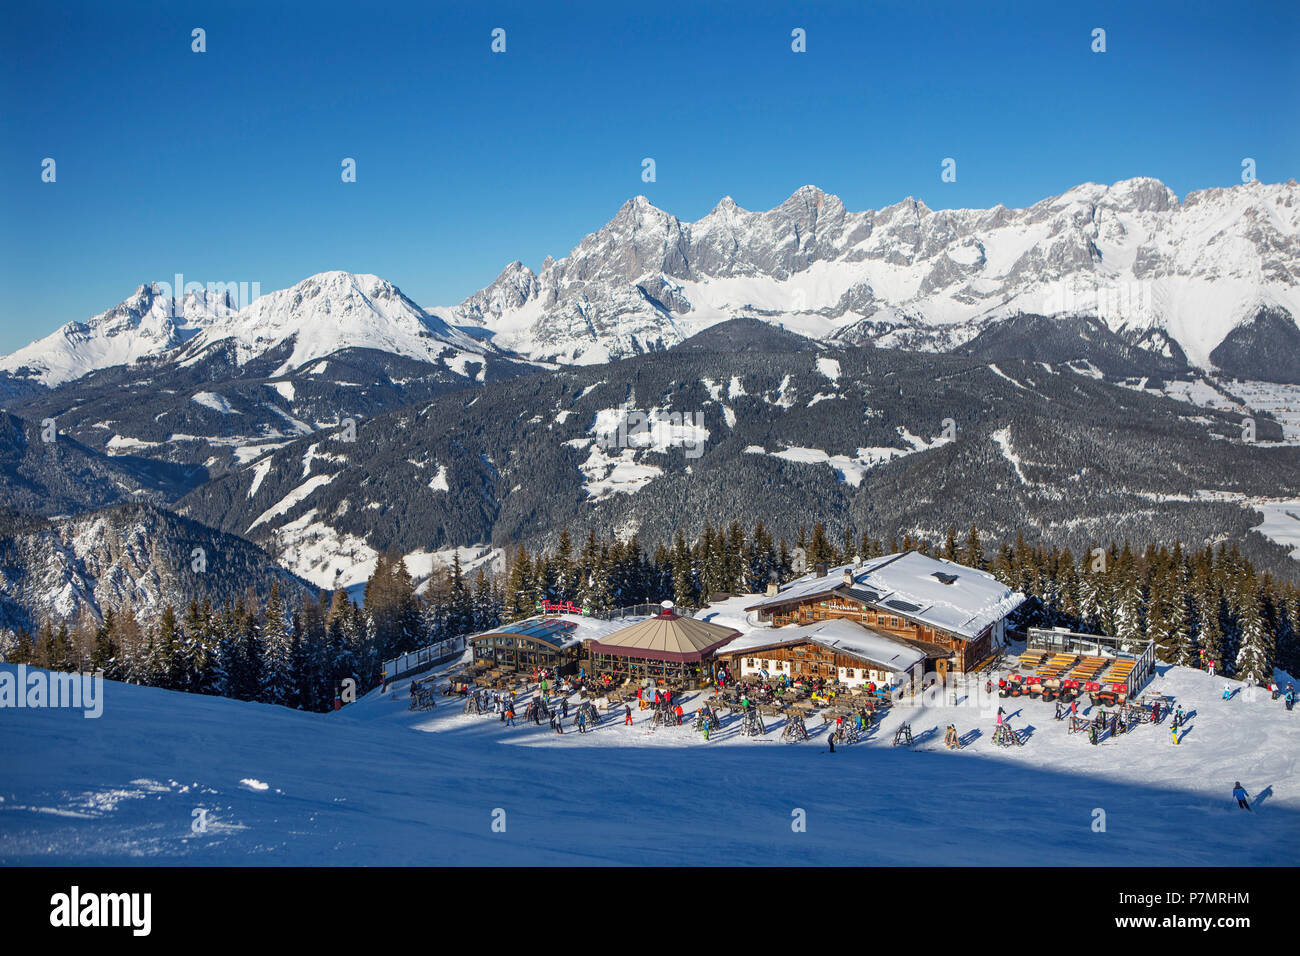 Austria, Styria, Liezen district, Schladming, Gleiming, Reiteralm, Reiteralm ski area, Hochalm, view of the Dachstein massif, Stock Photo